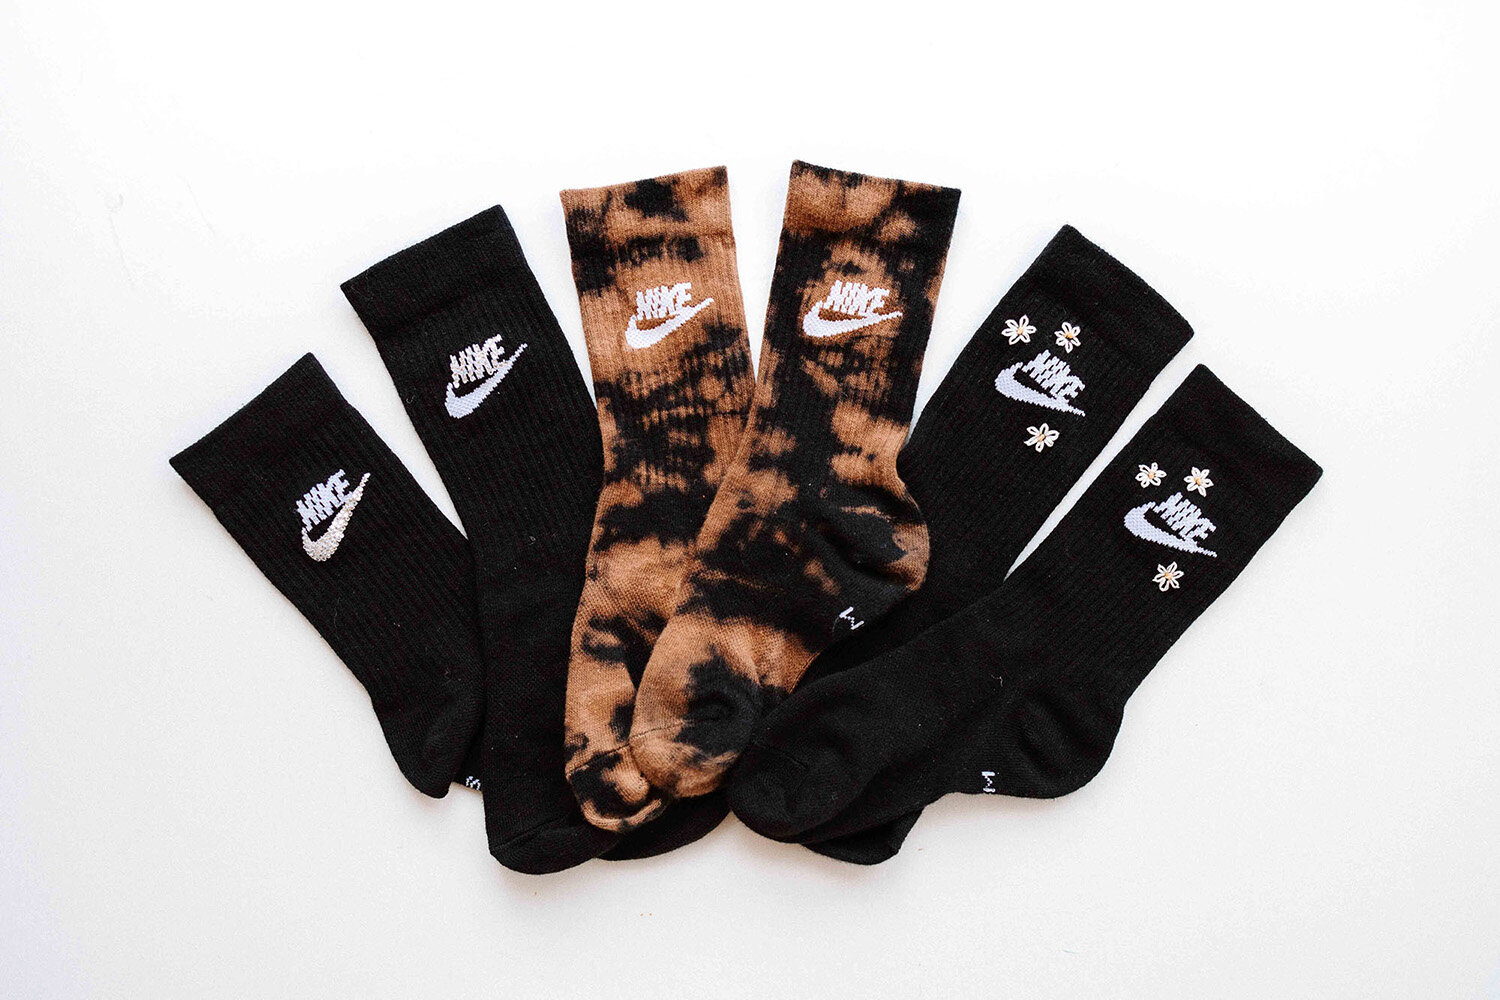 Ontstaan kust Beenmerg Customize your Nike Crew Socks in 3 ways! — deconstrut